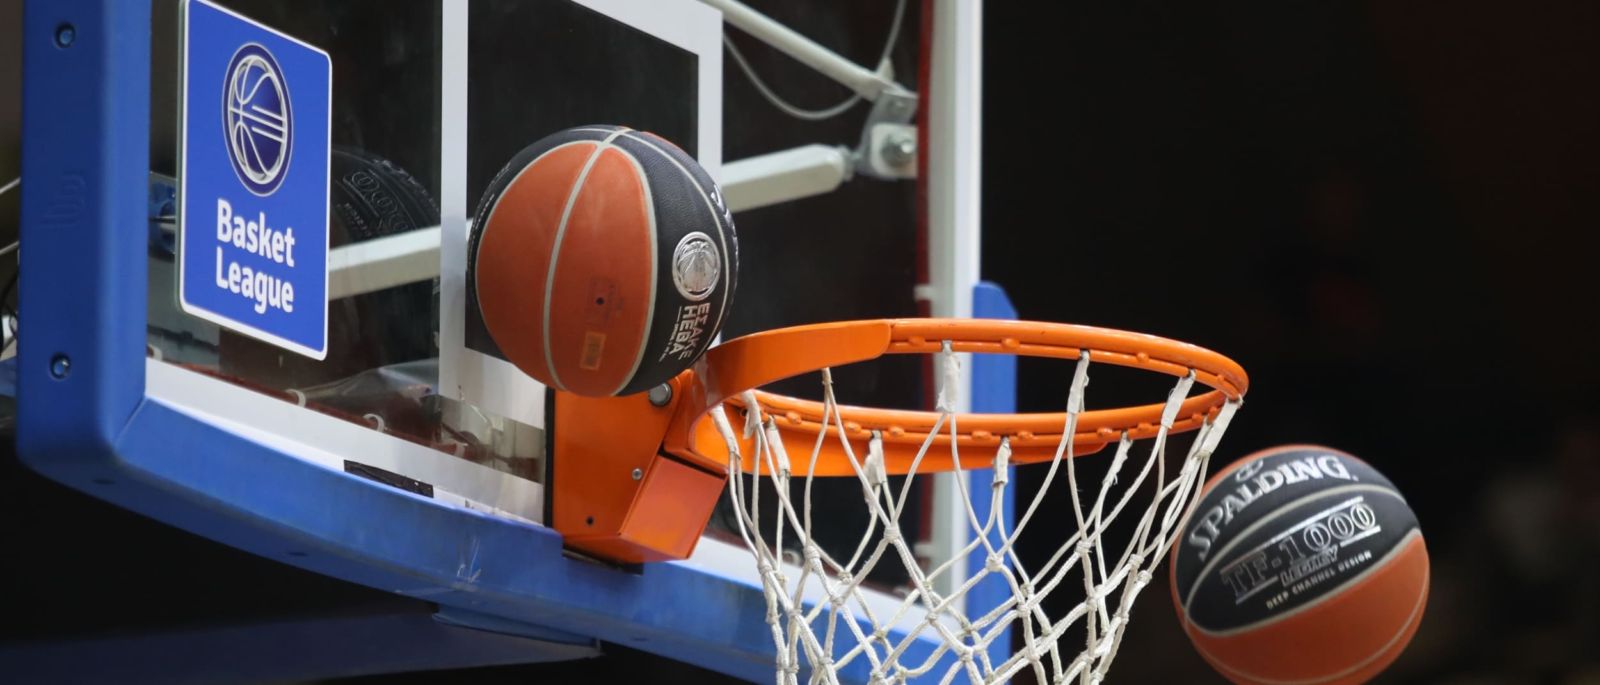 Αλλαγές στις ώρες έναρξης αναμετρήσεων για την 17η αγωνιστική της Basket League